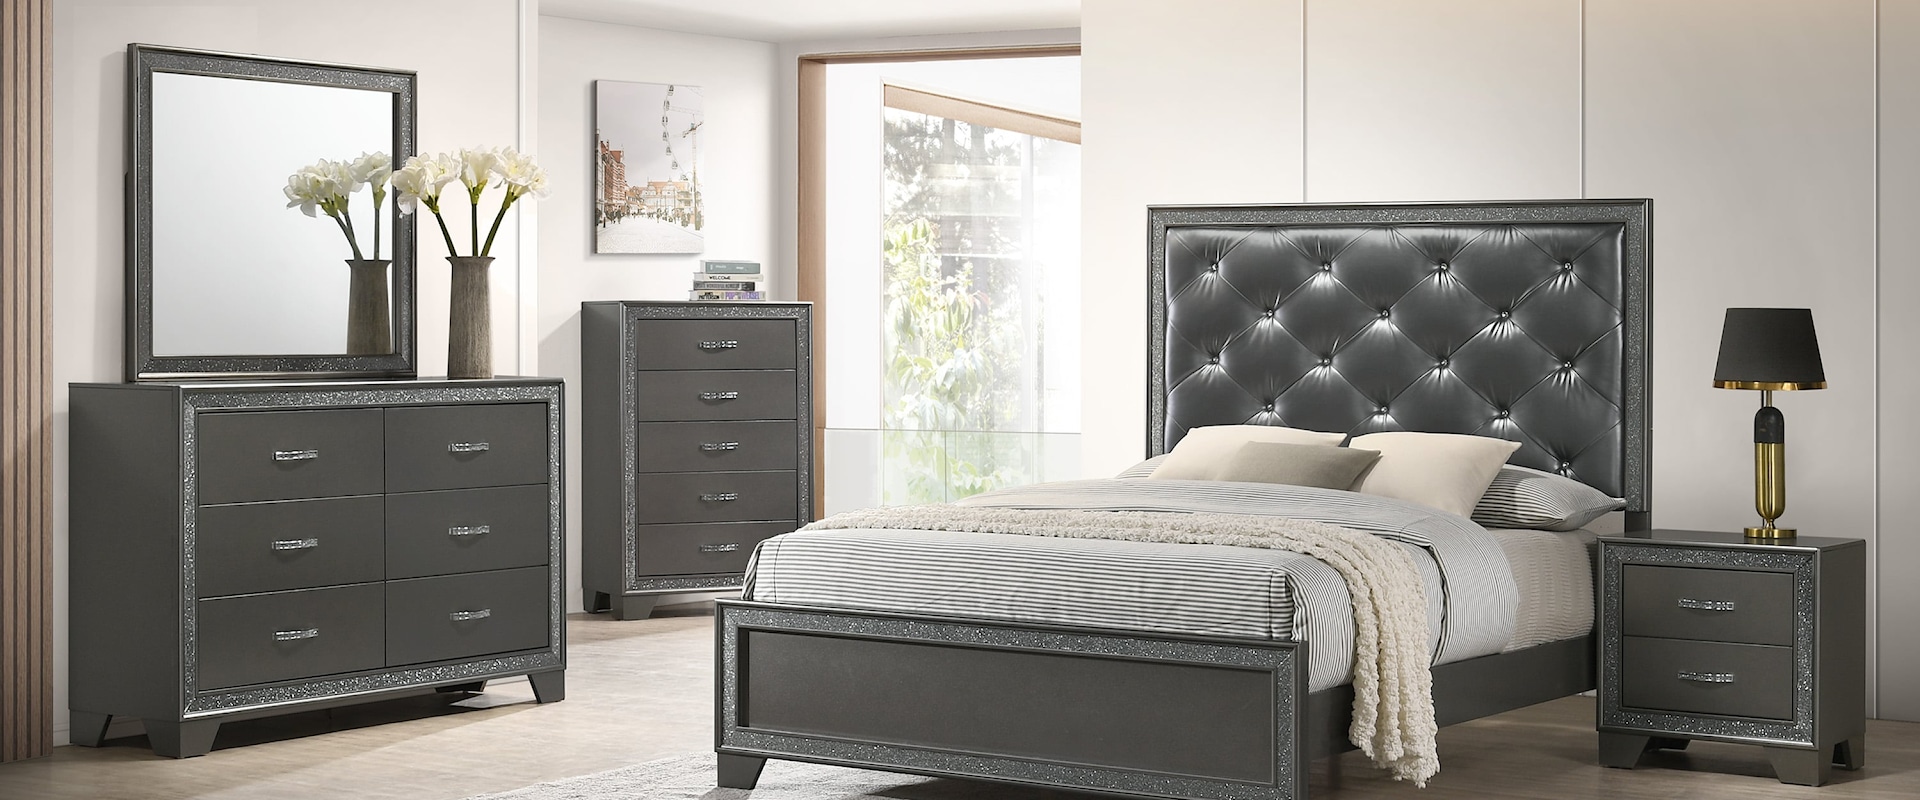 Queen Upholstered Bed 5-Piece Bedroom Set